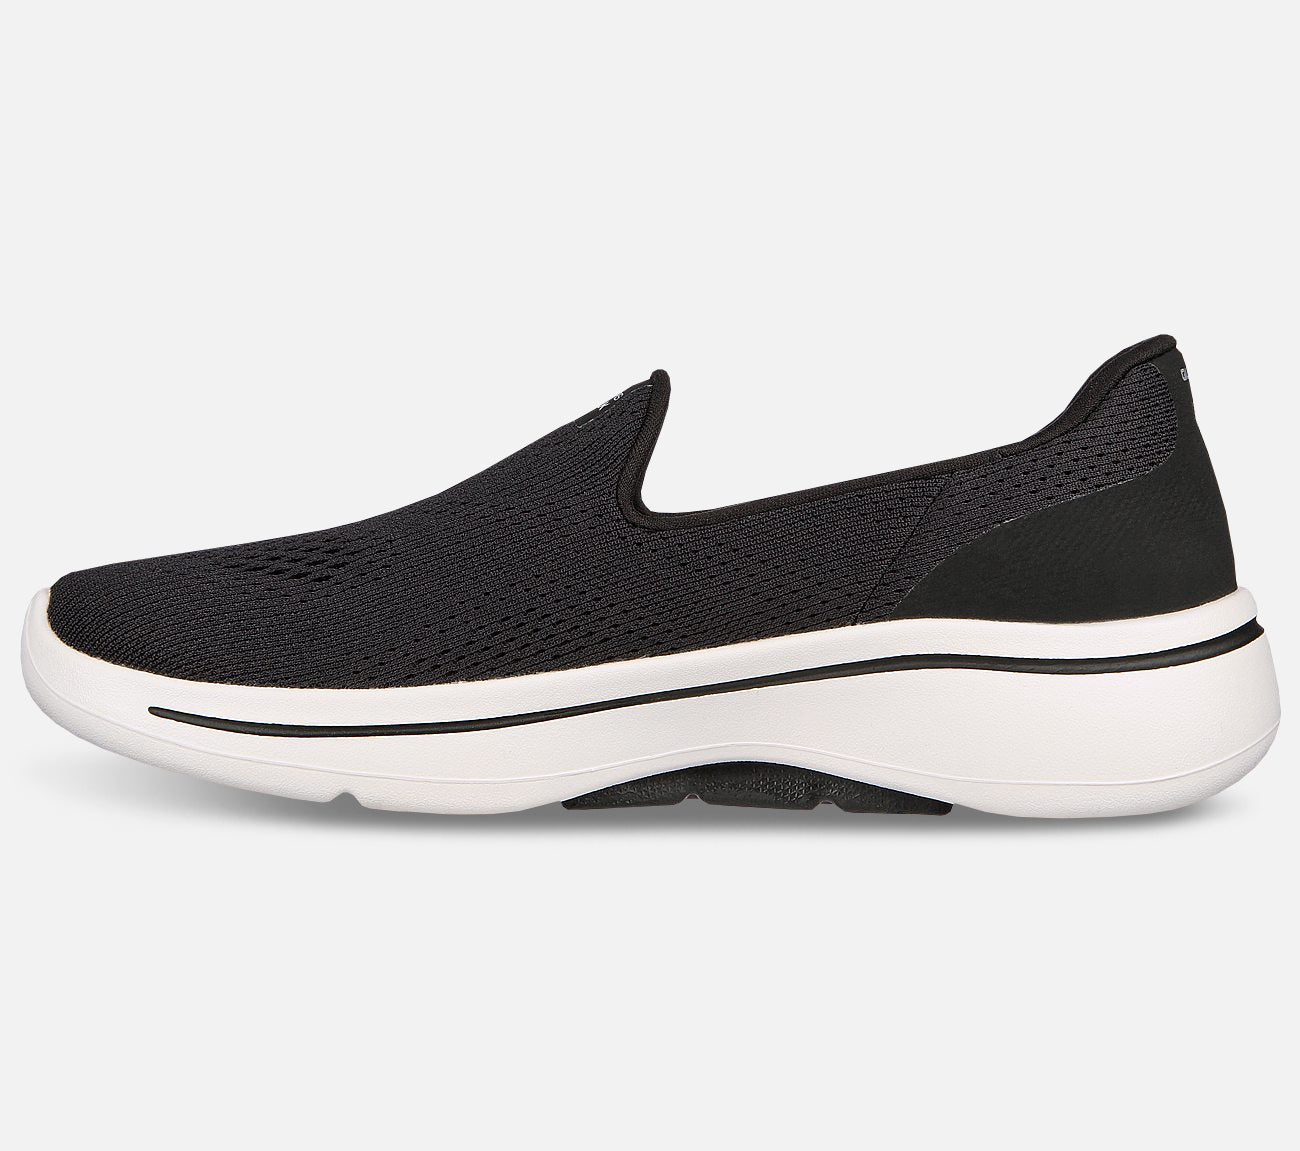 GO WALK Arch Fit - Imagined Shoe Skechers